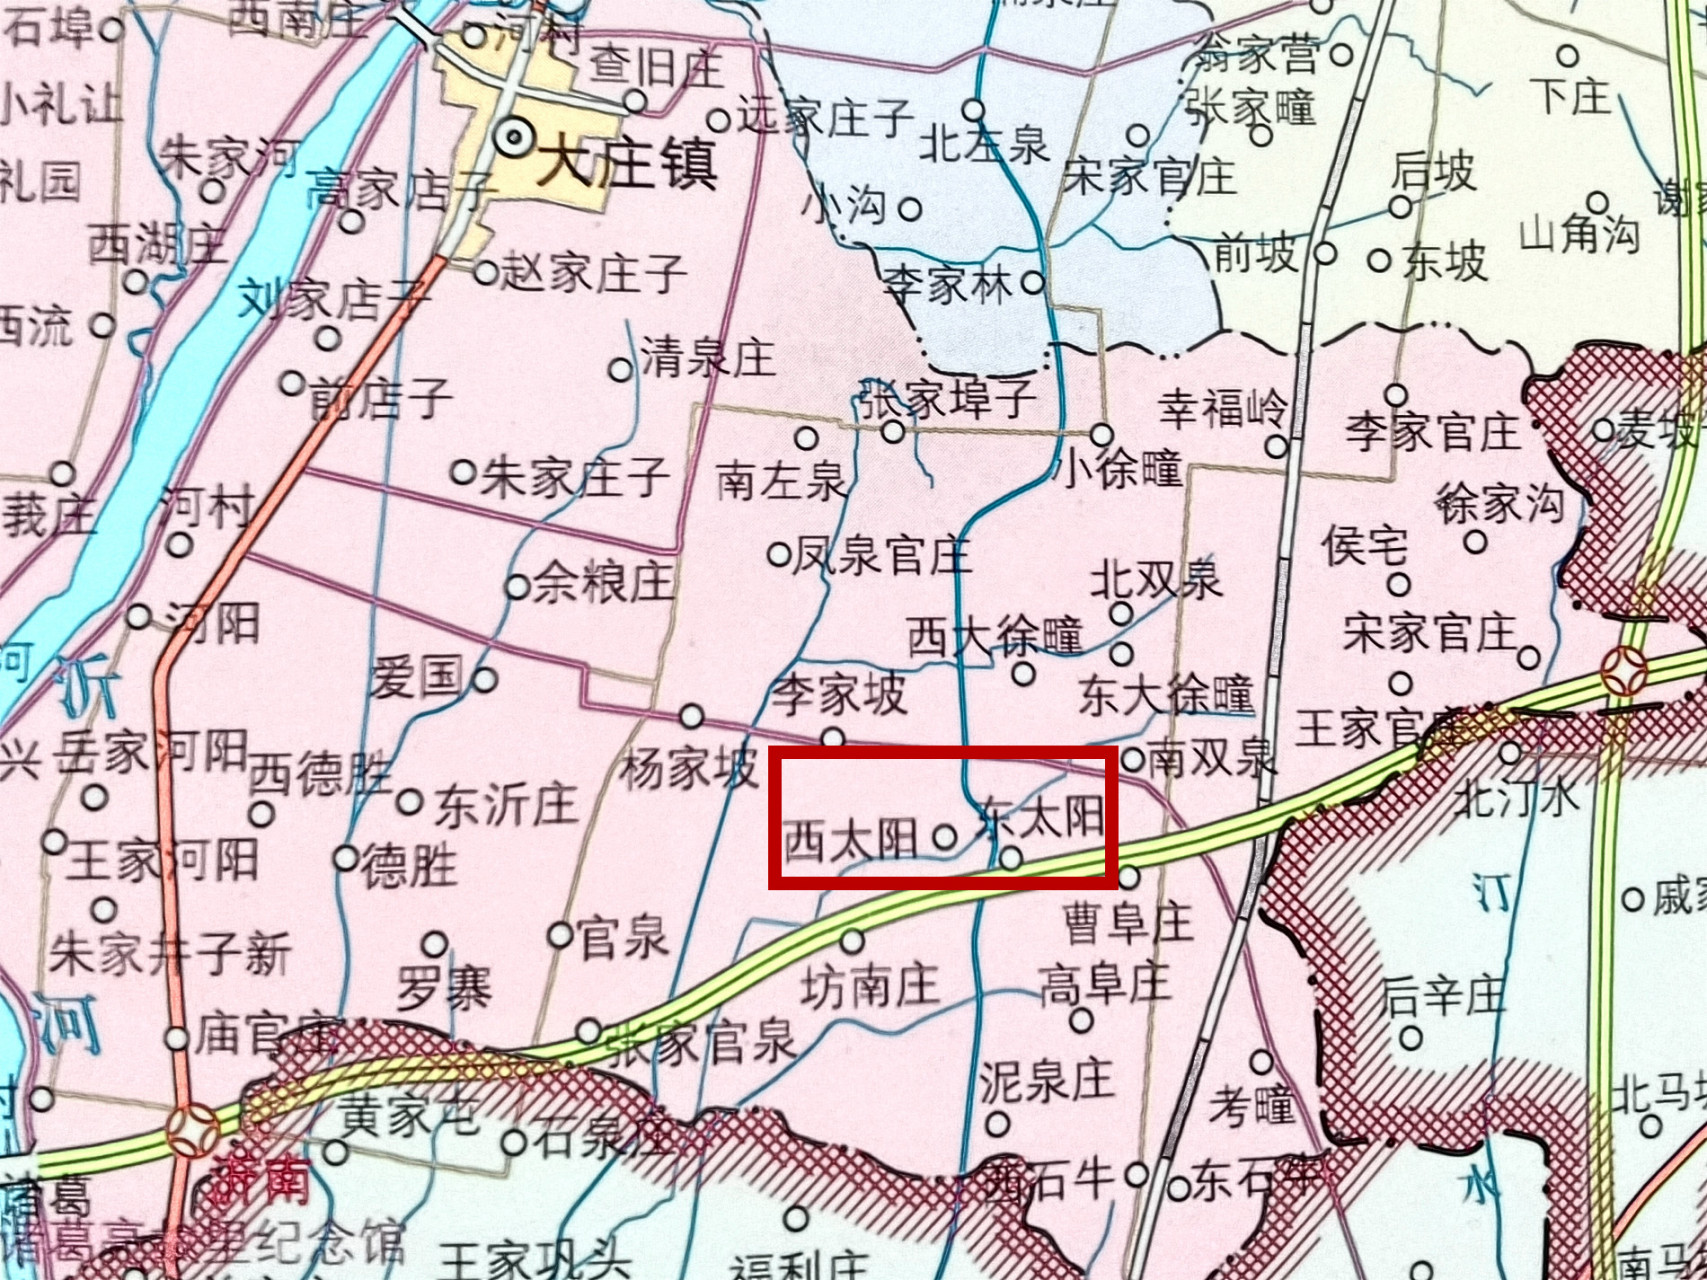 根据沂南县地名资料的记载,相传明代前就有人在此定居,当时这里有一